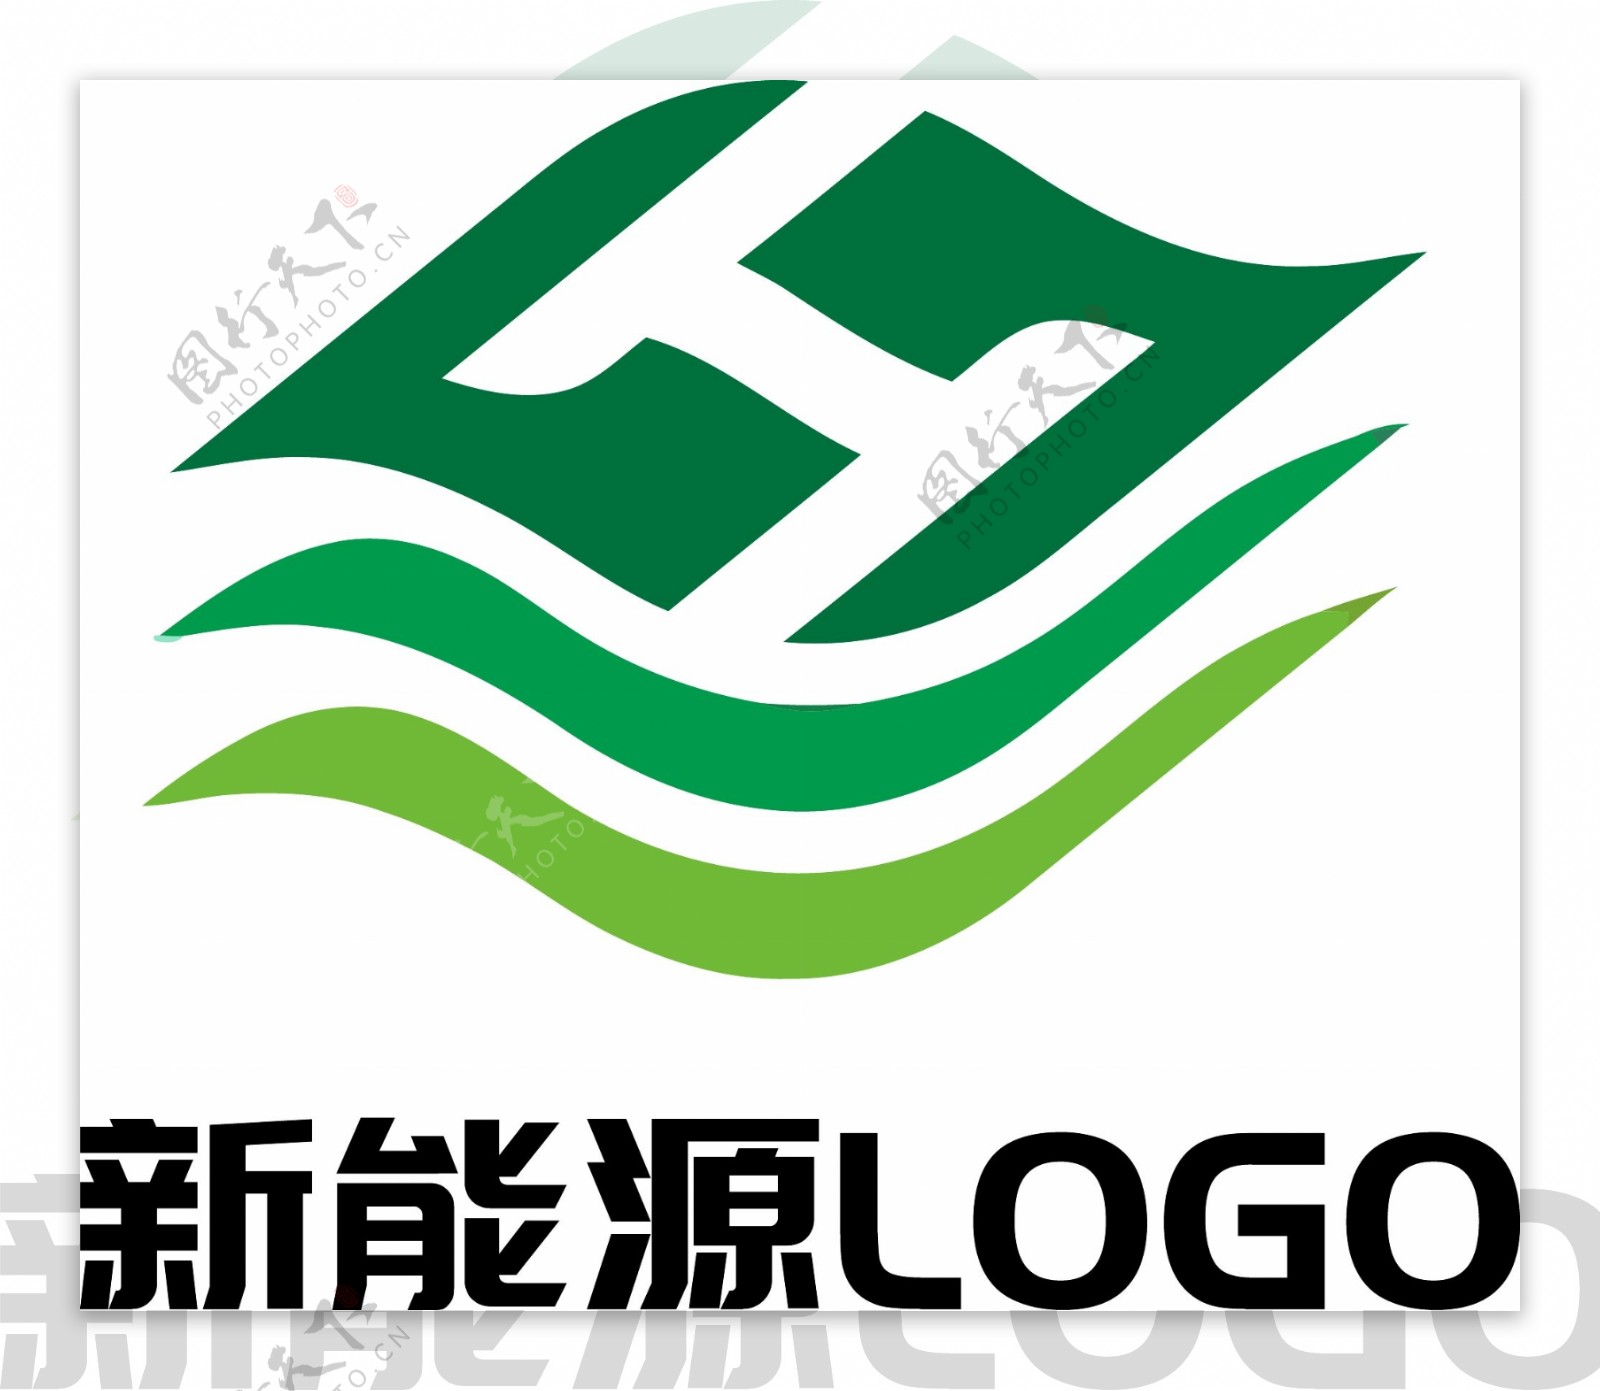 新能源绿色环保科技企业LOGO原创设计